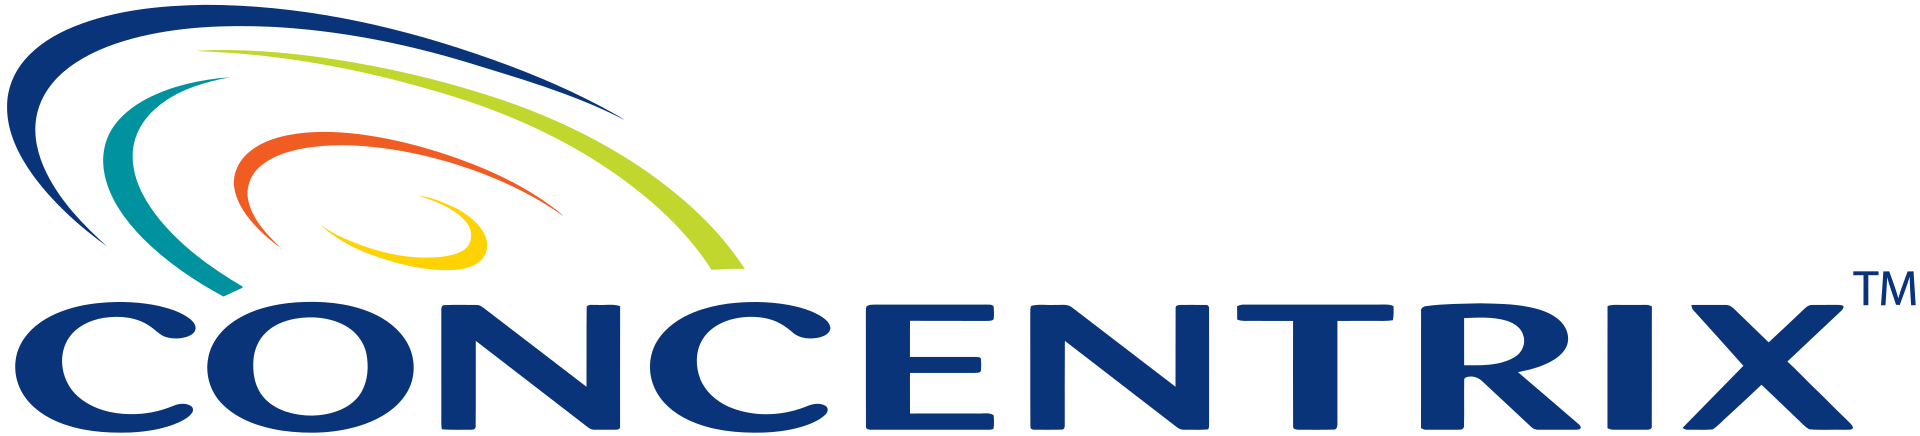 Concentrix Brand Logo